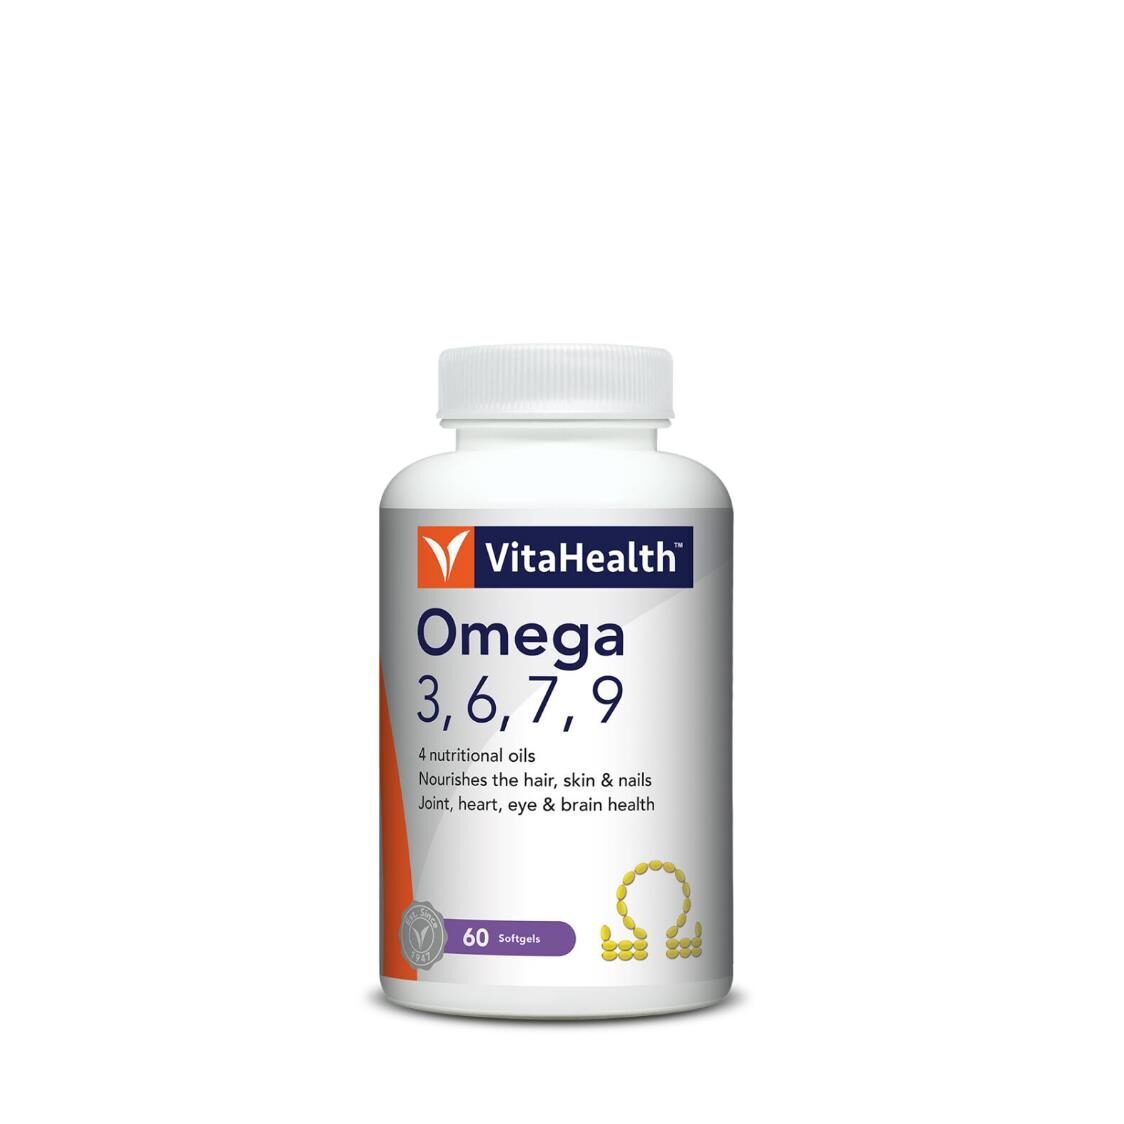 VitaHealth Omega 3679 60s